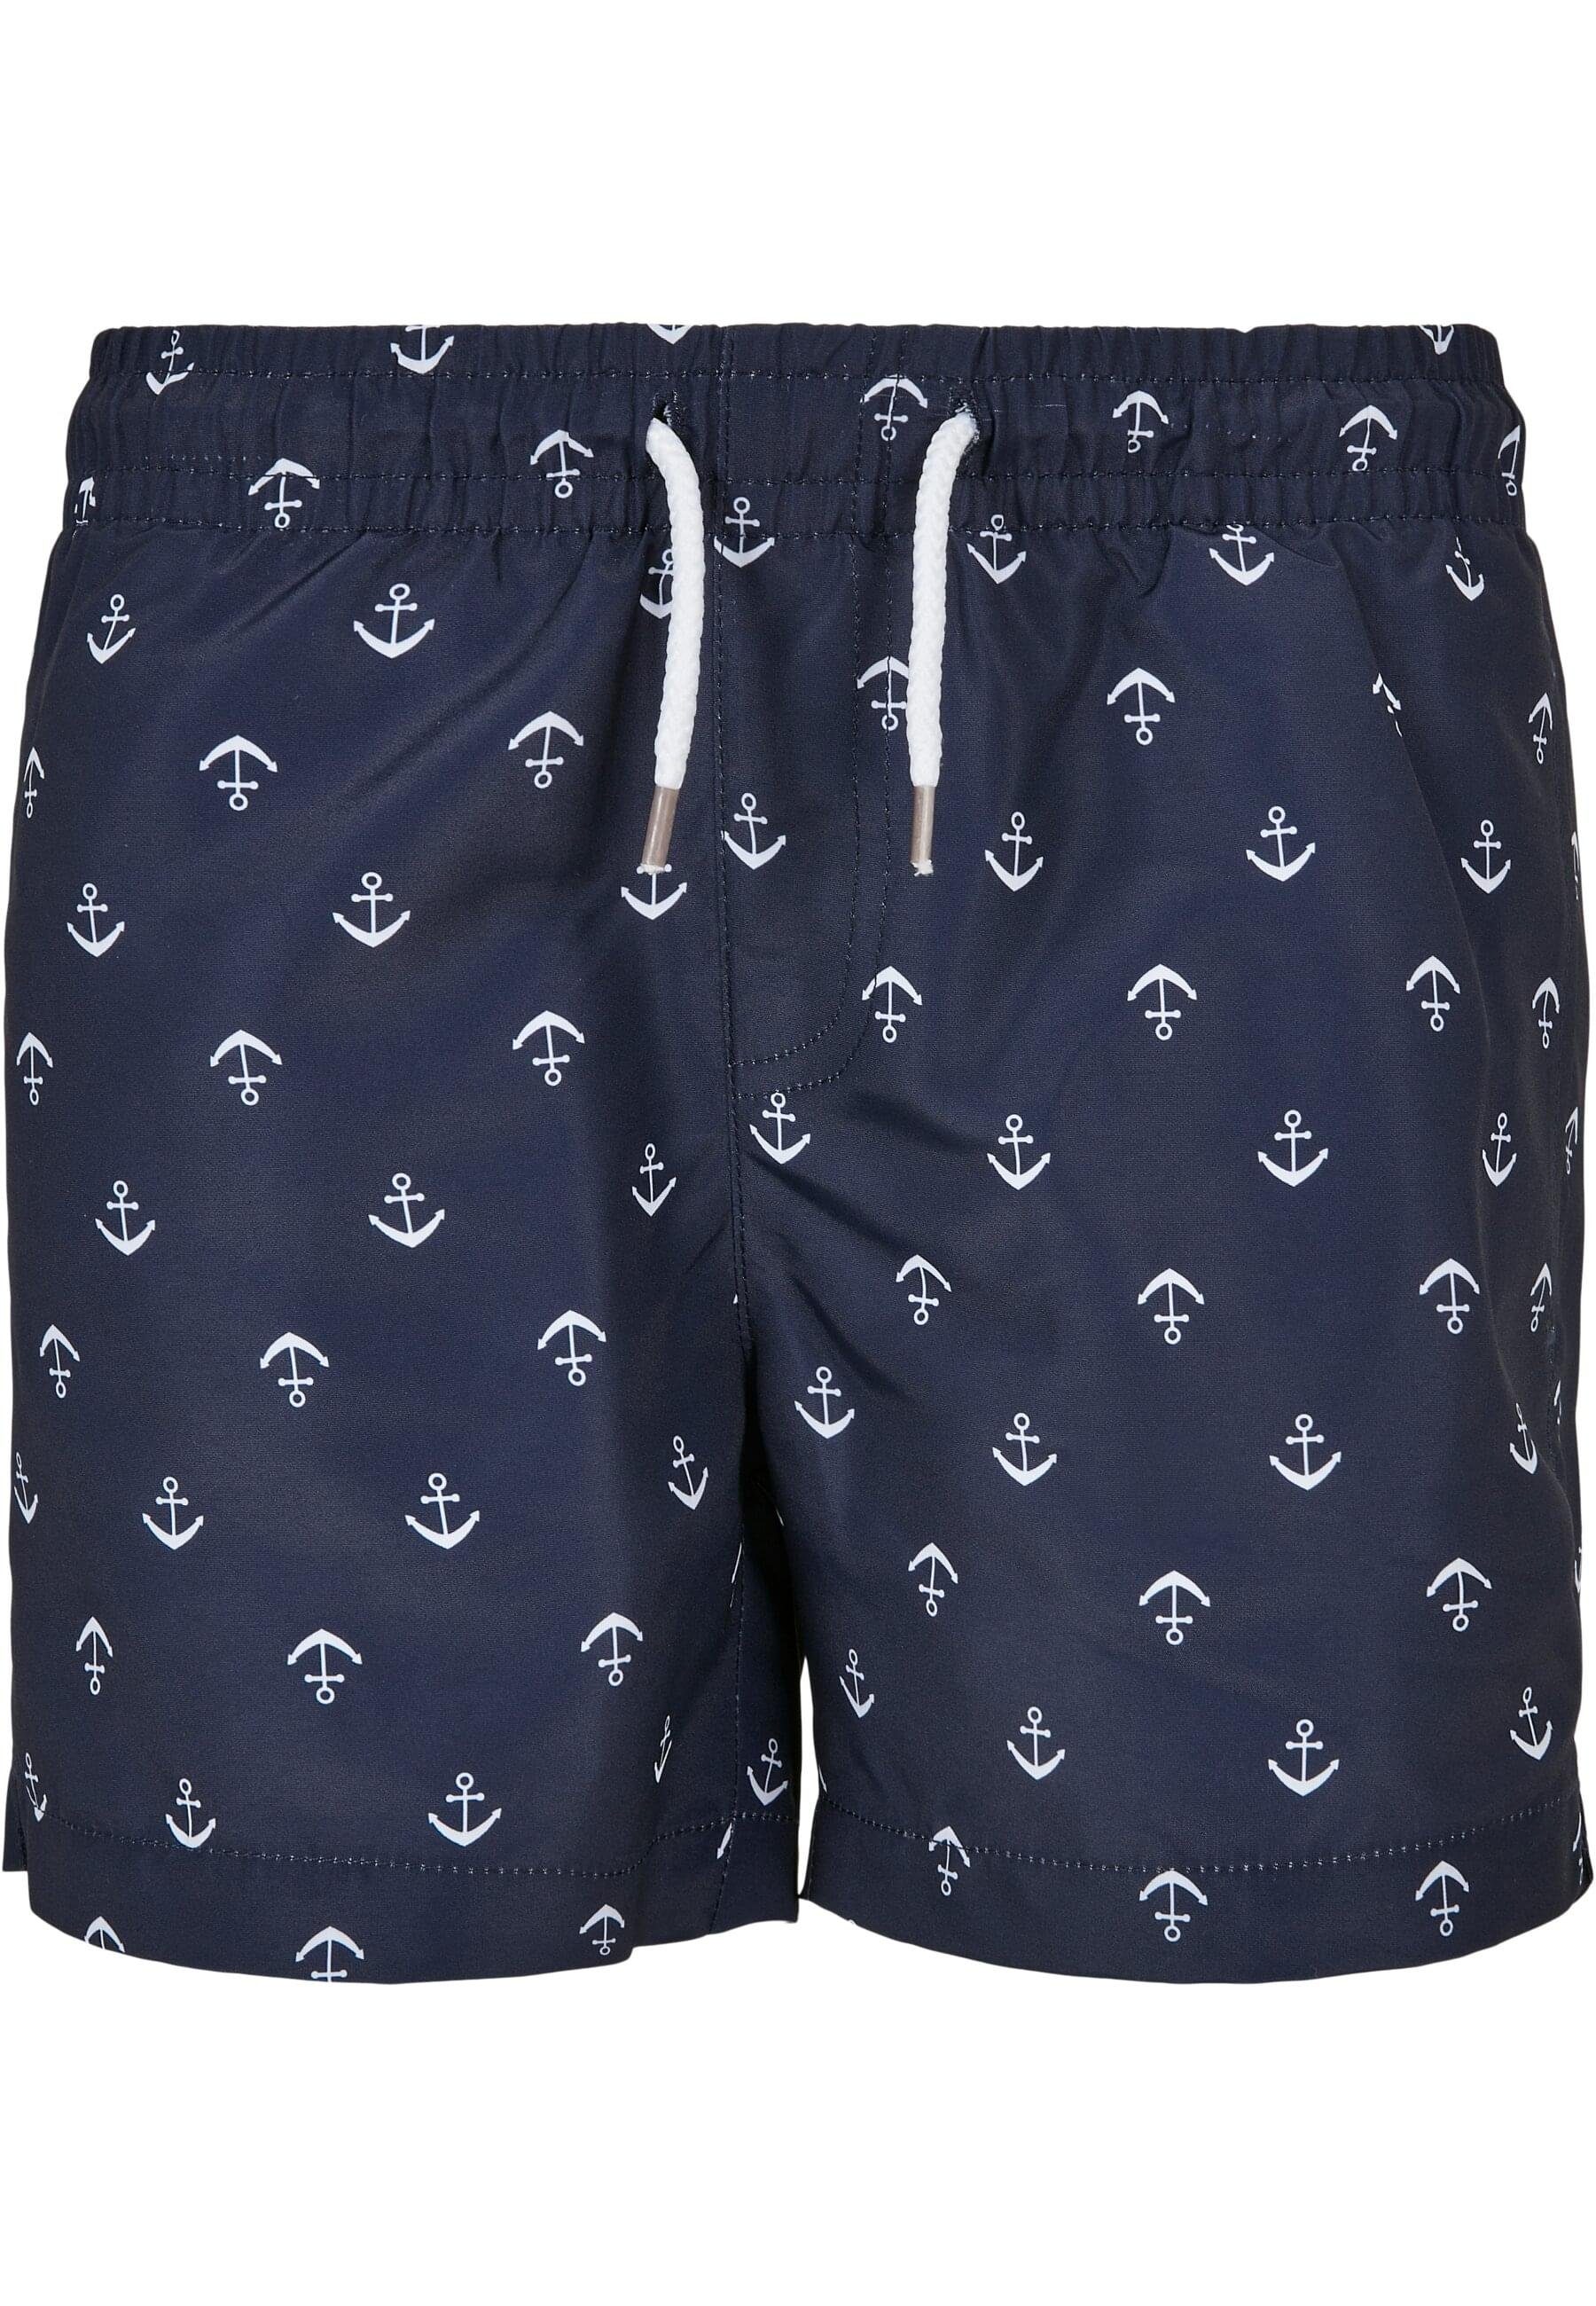 URBAN CLASSICS Badeshorts Herren Boys Shorts anchor/navy Swim Pattern